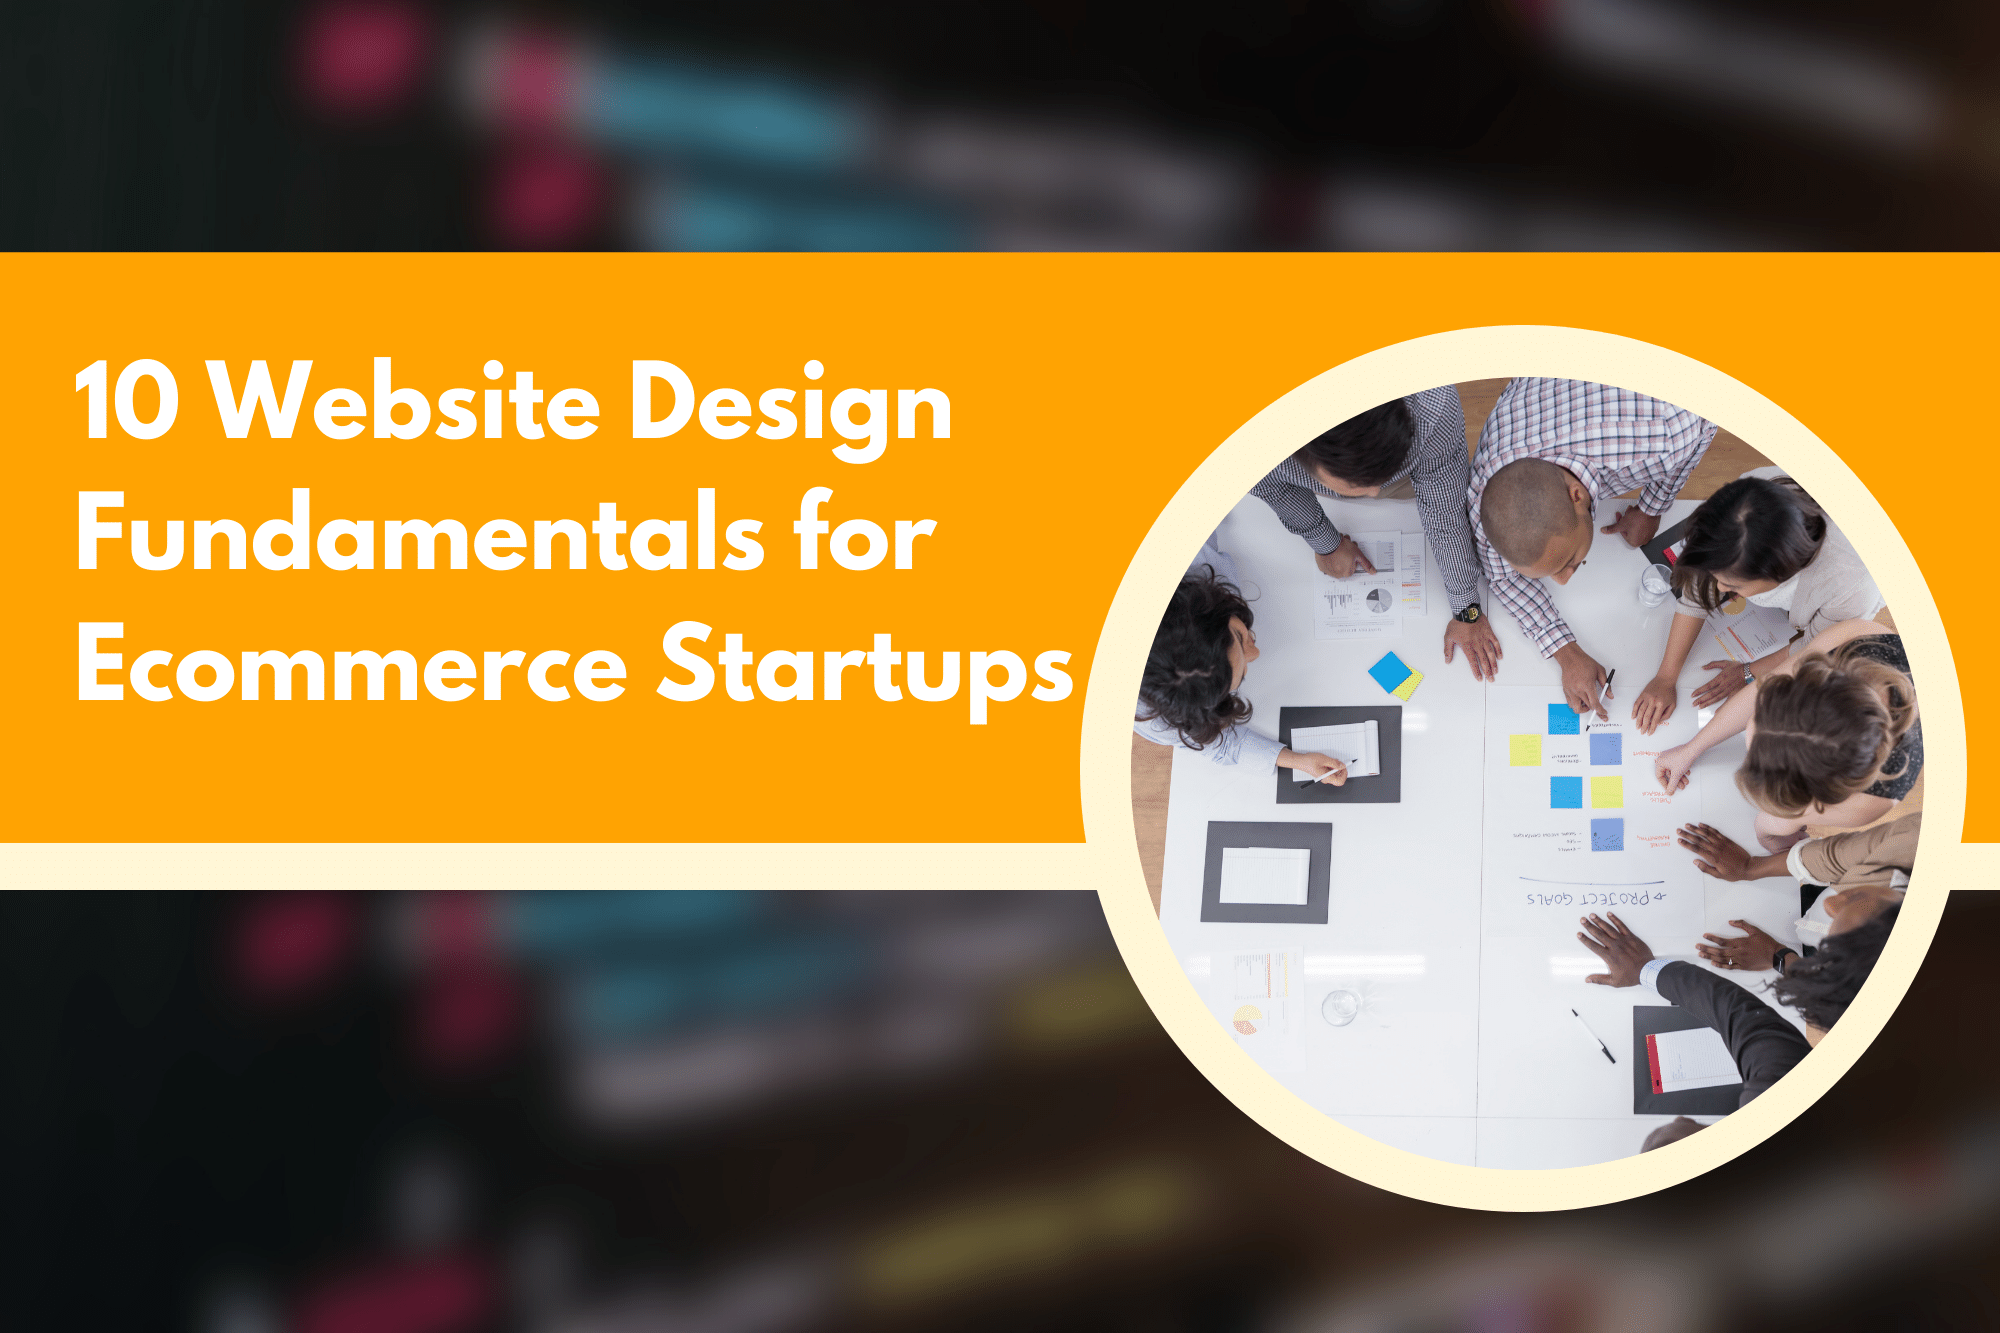 10 Website Design Fundamentals for Ecommerce Startups